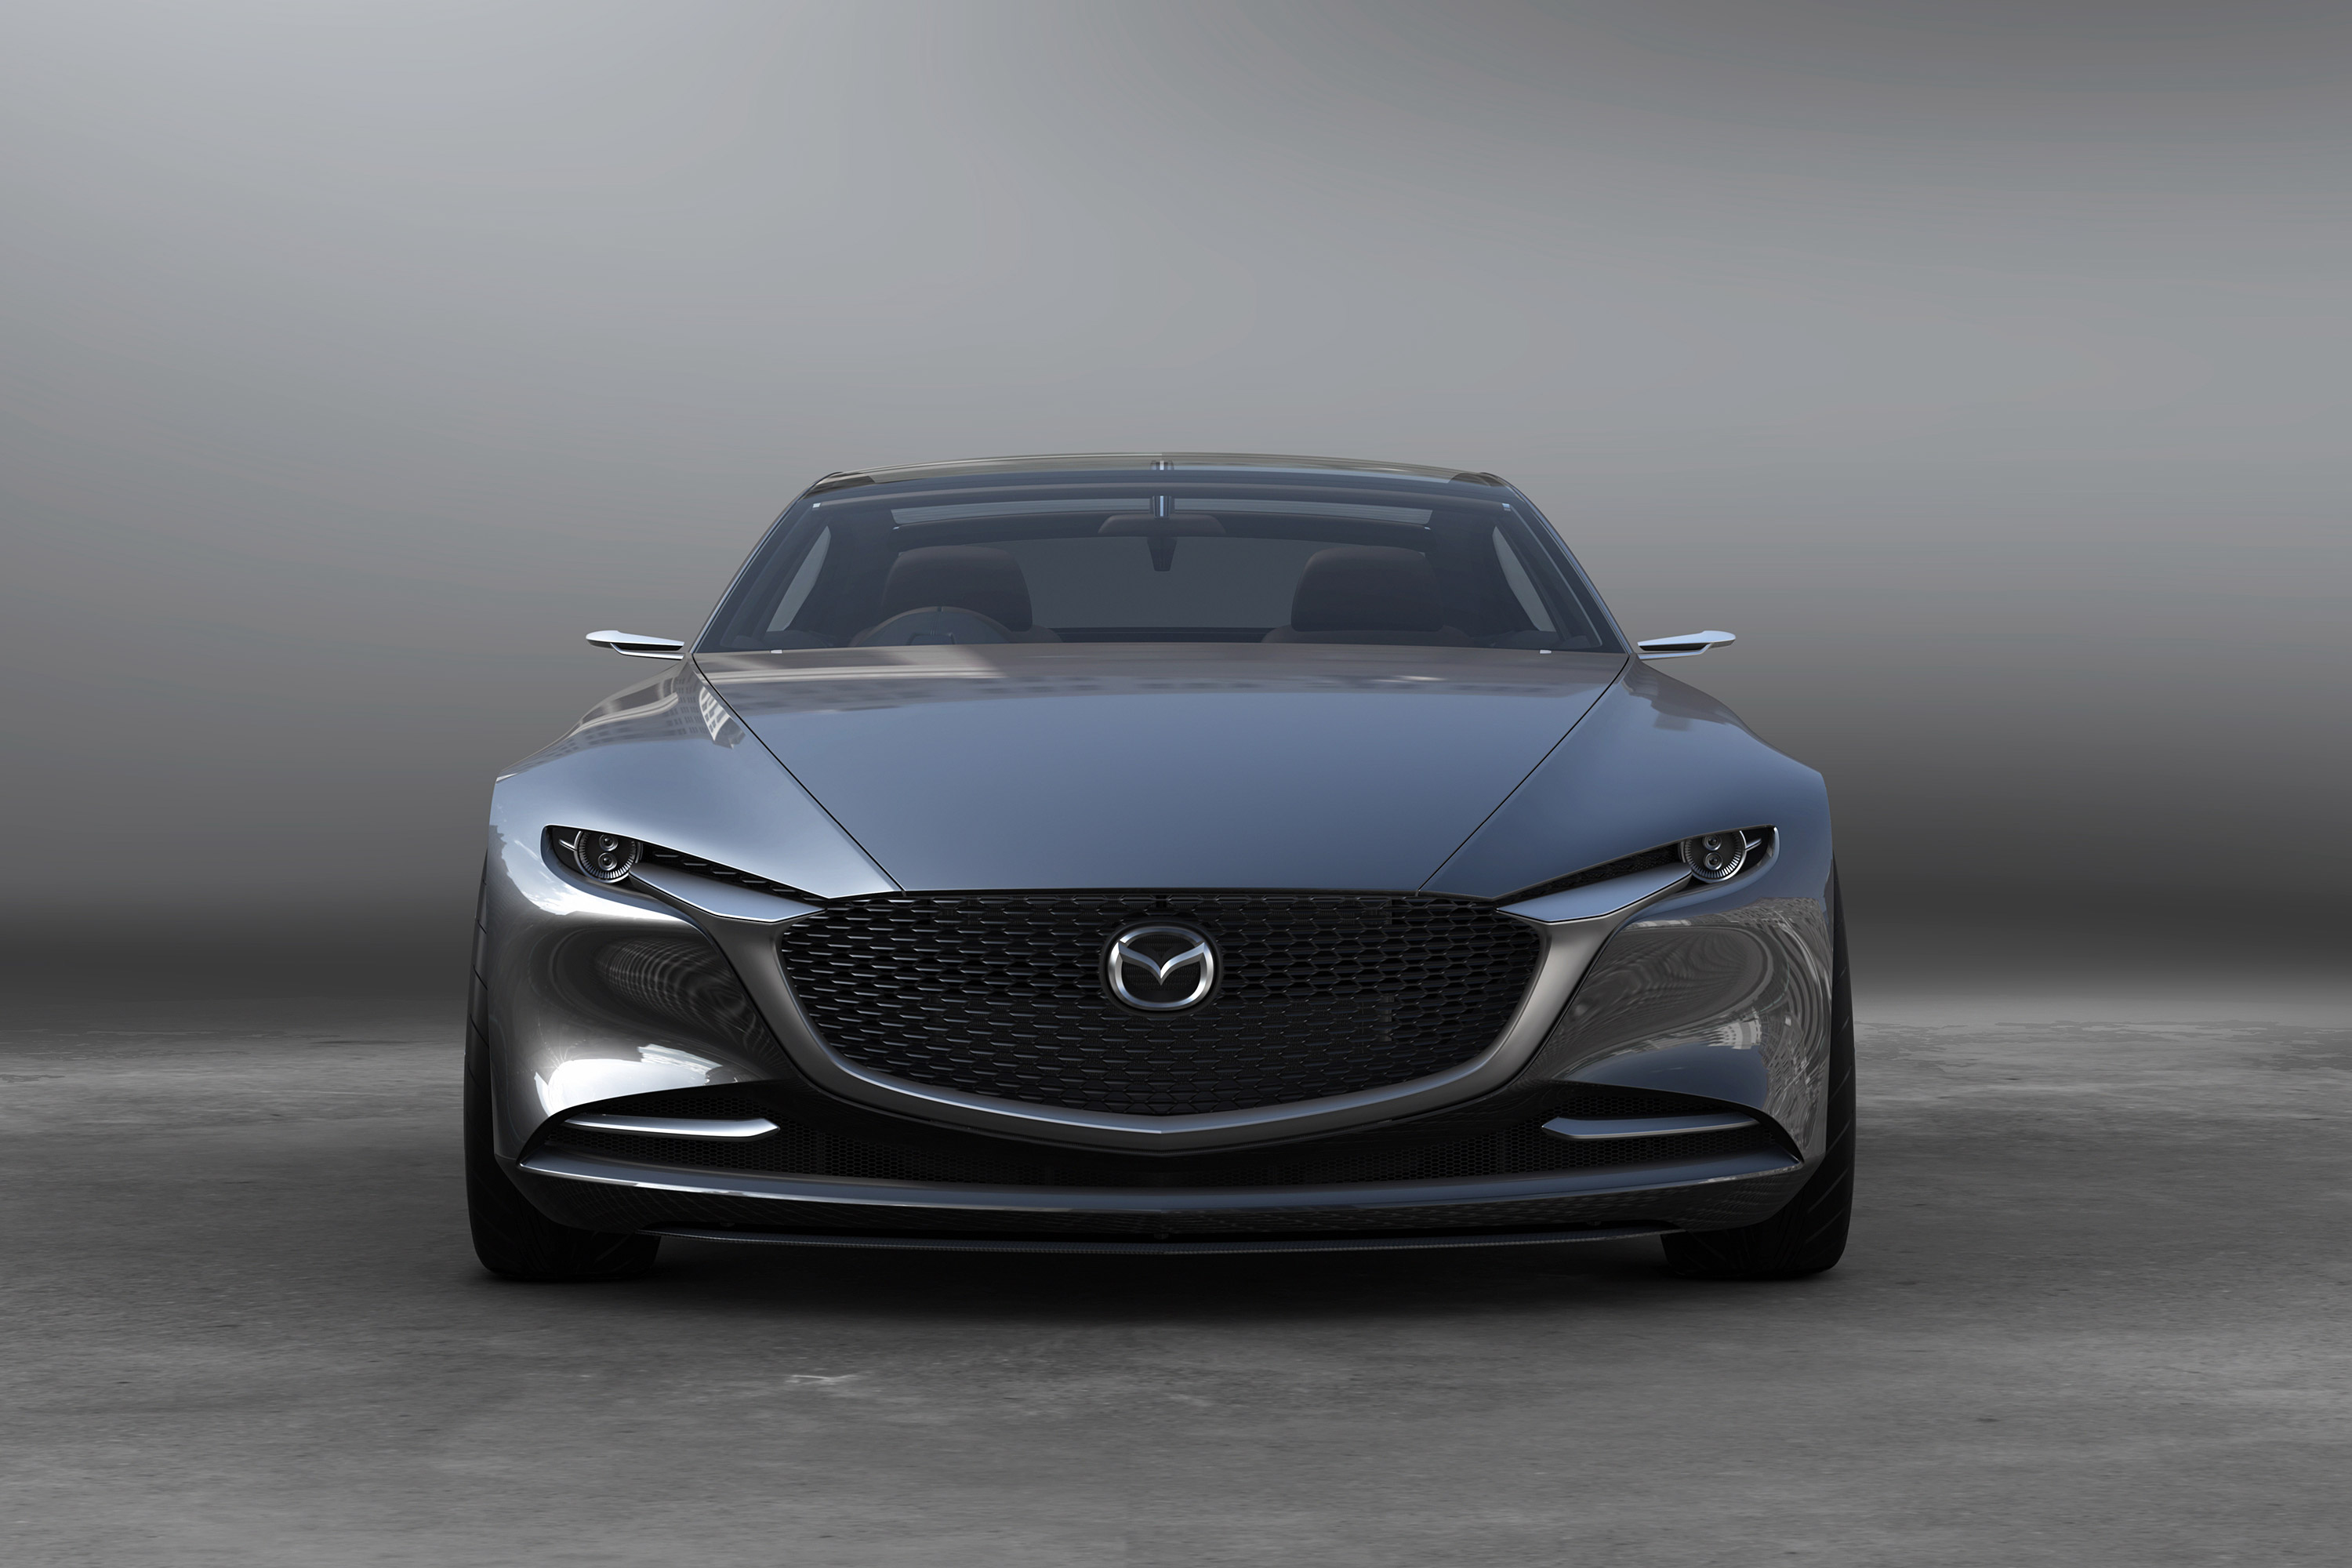  2017 Mazda Vision Coupe Concept Wallpaper.